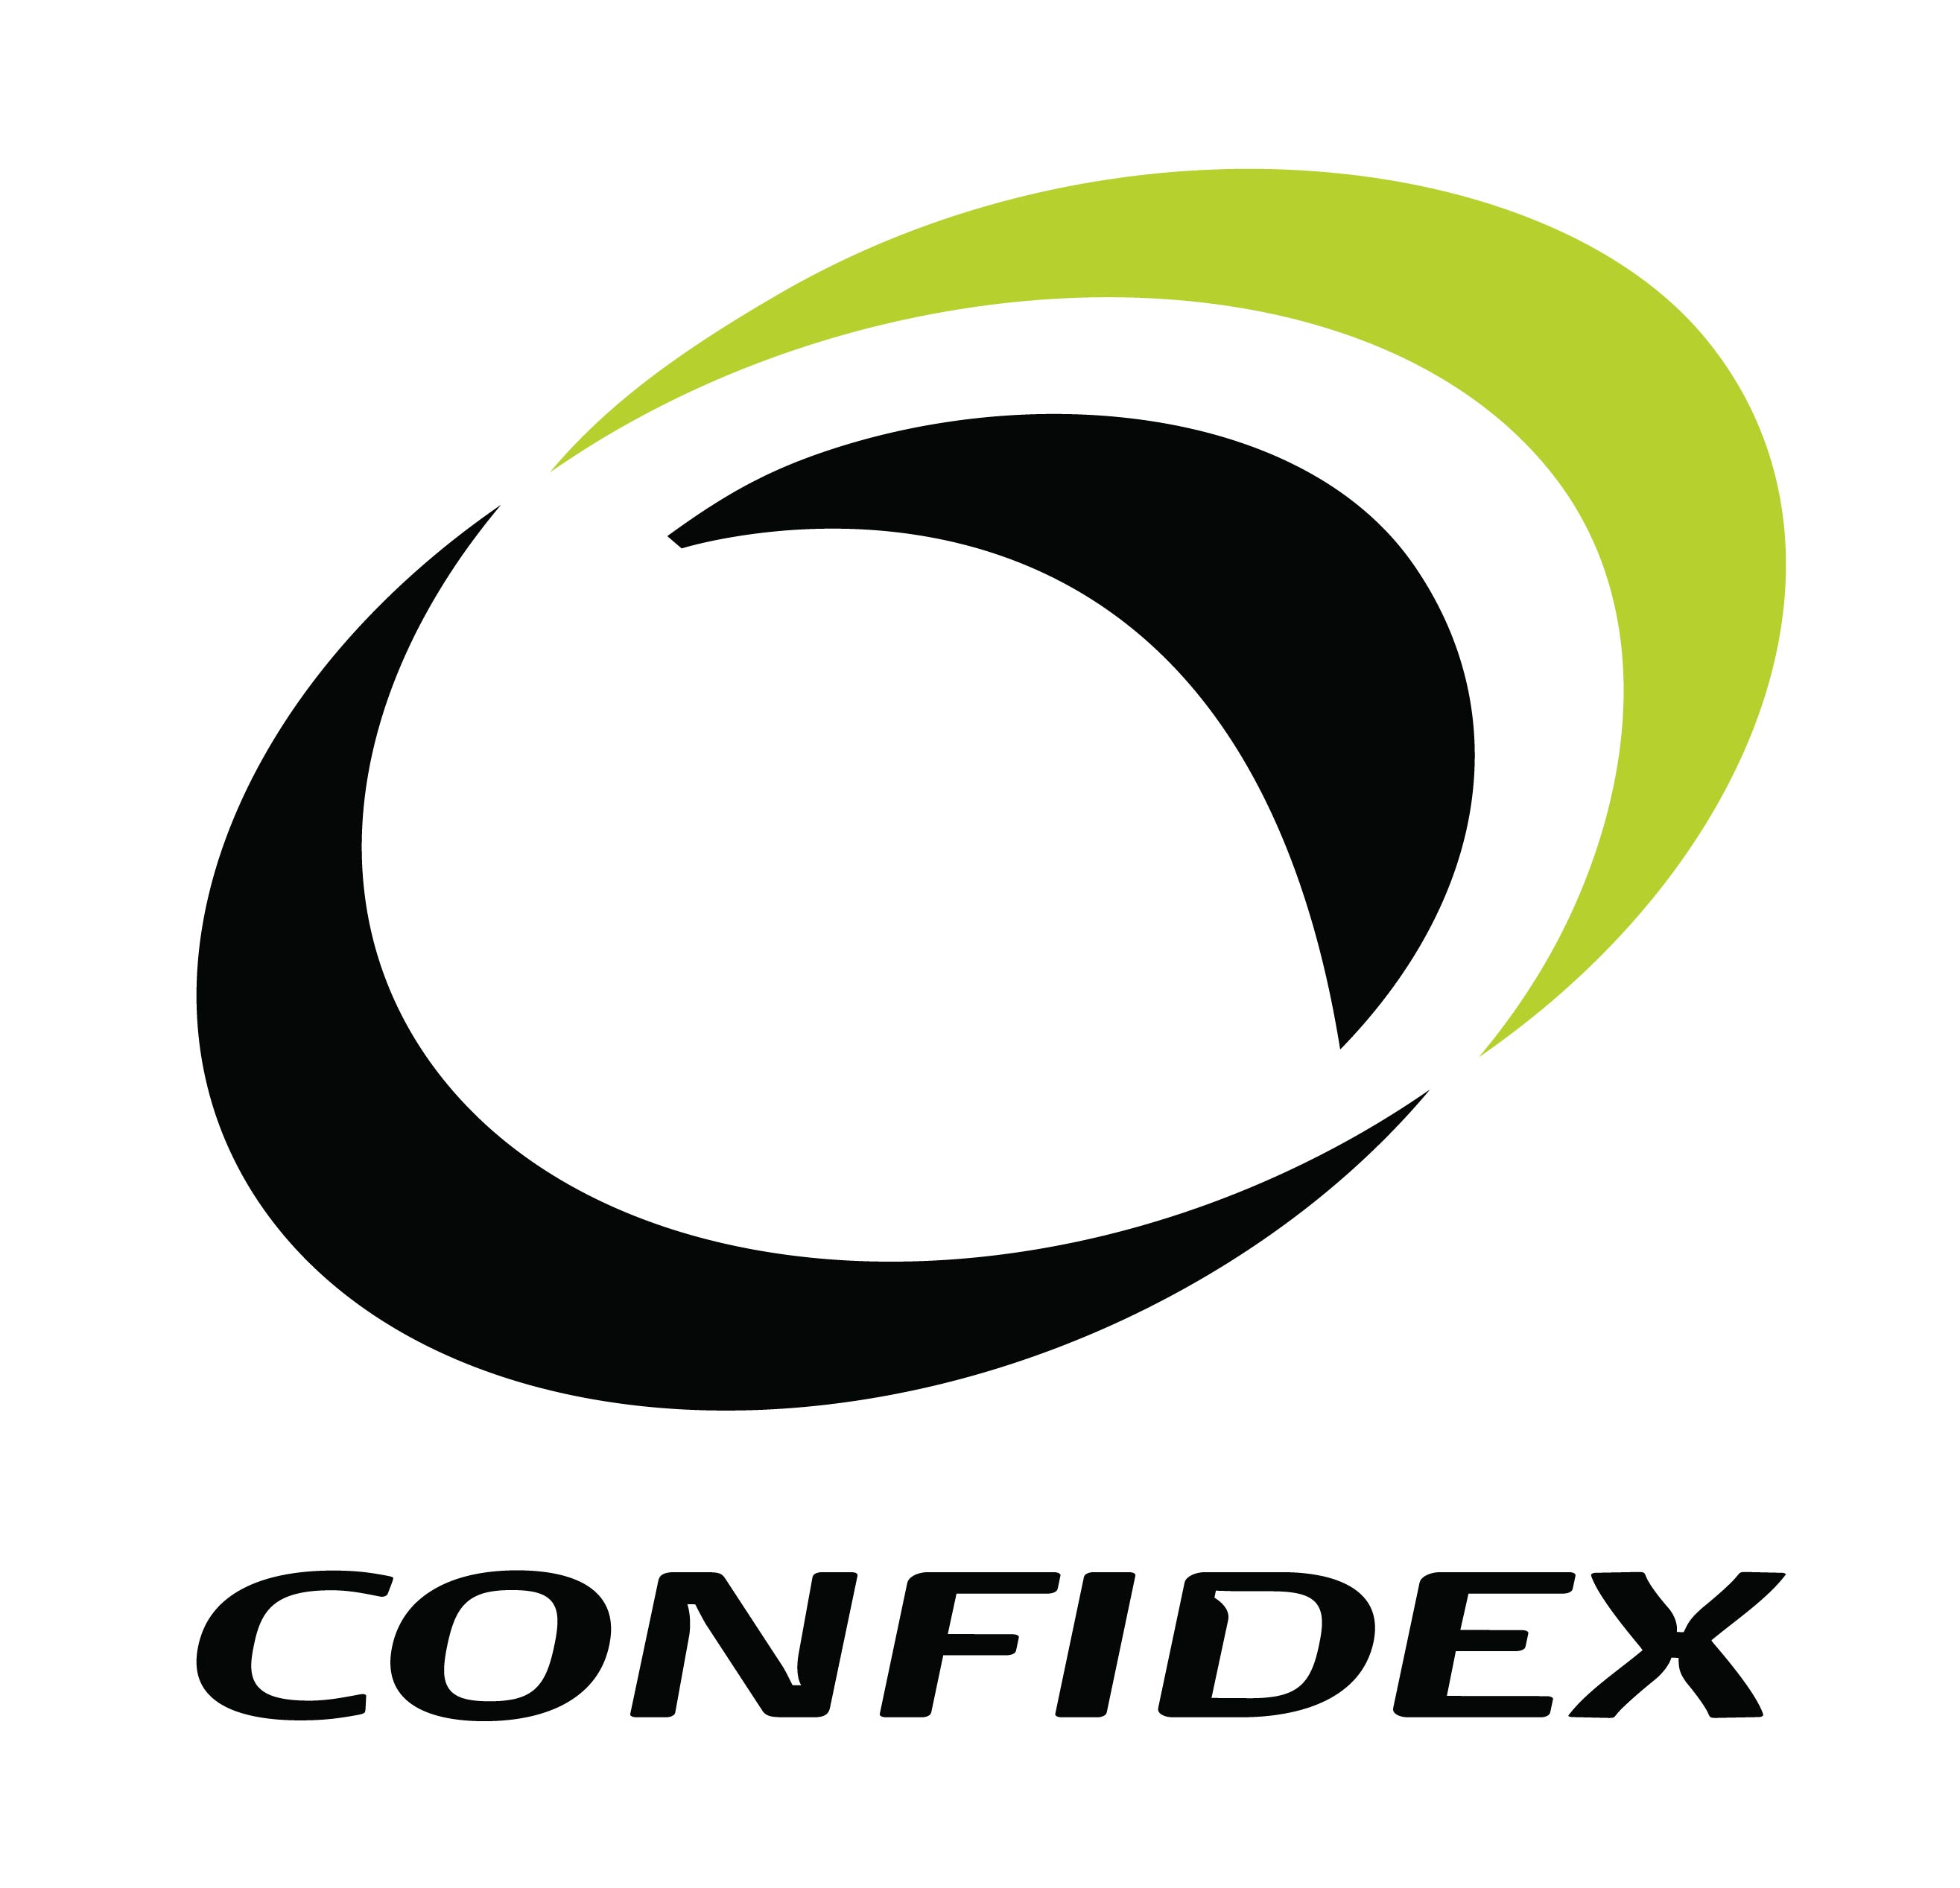 Confidex logo